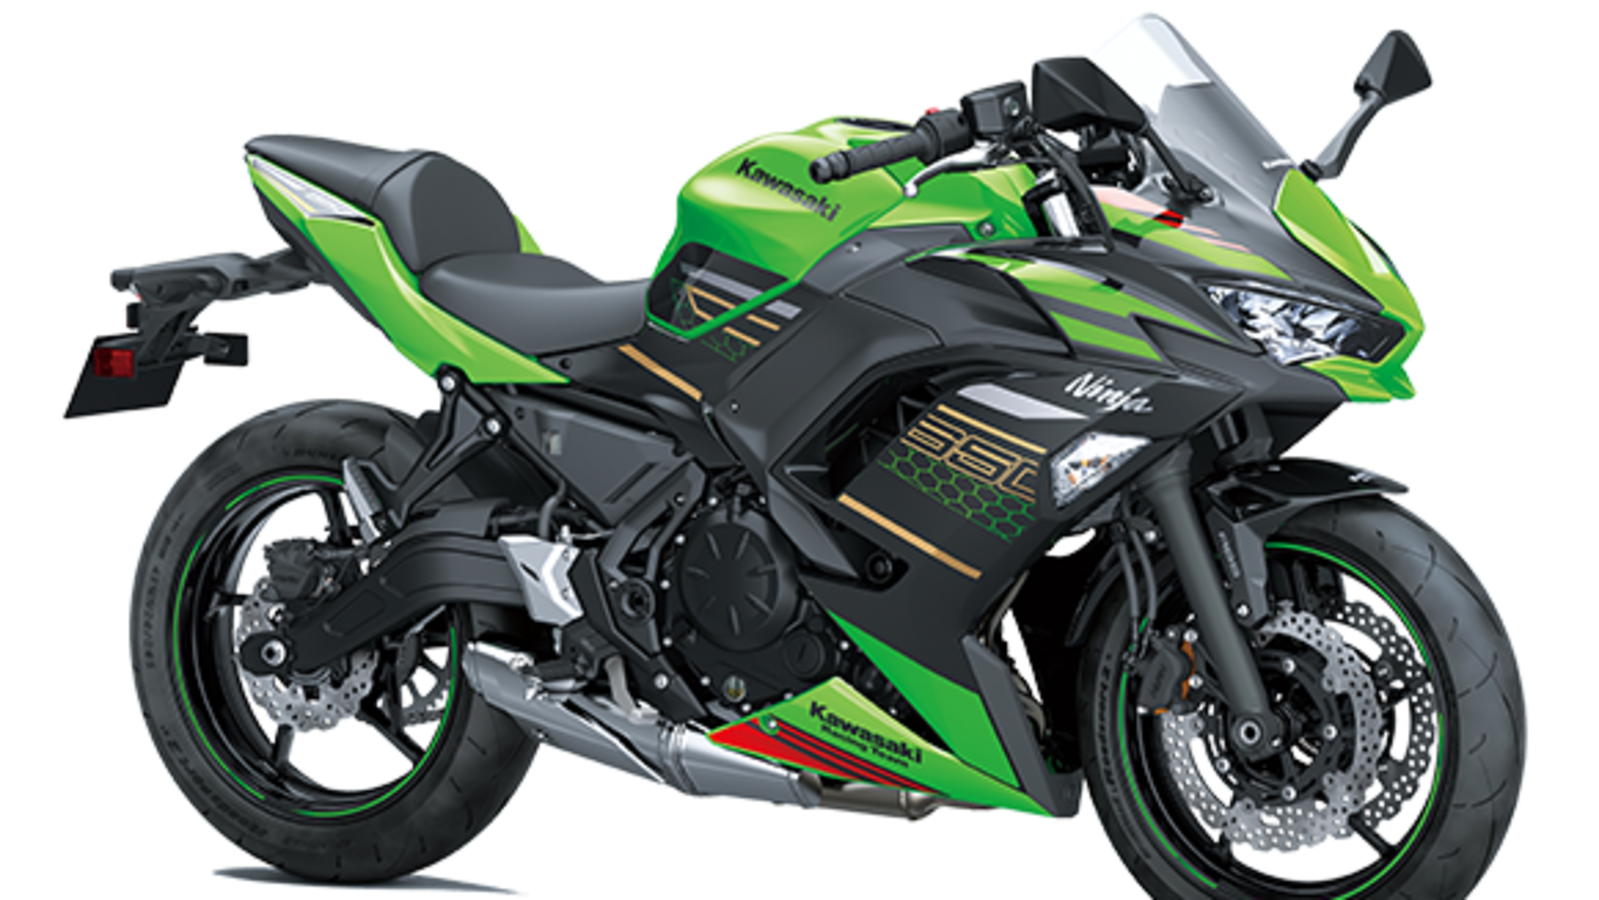 fremtid vedholdende knap Kawasaki Ninja 650 BS 6 gets a new 'Lime Green' colour option